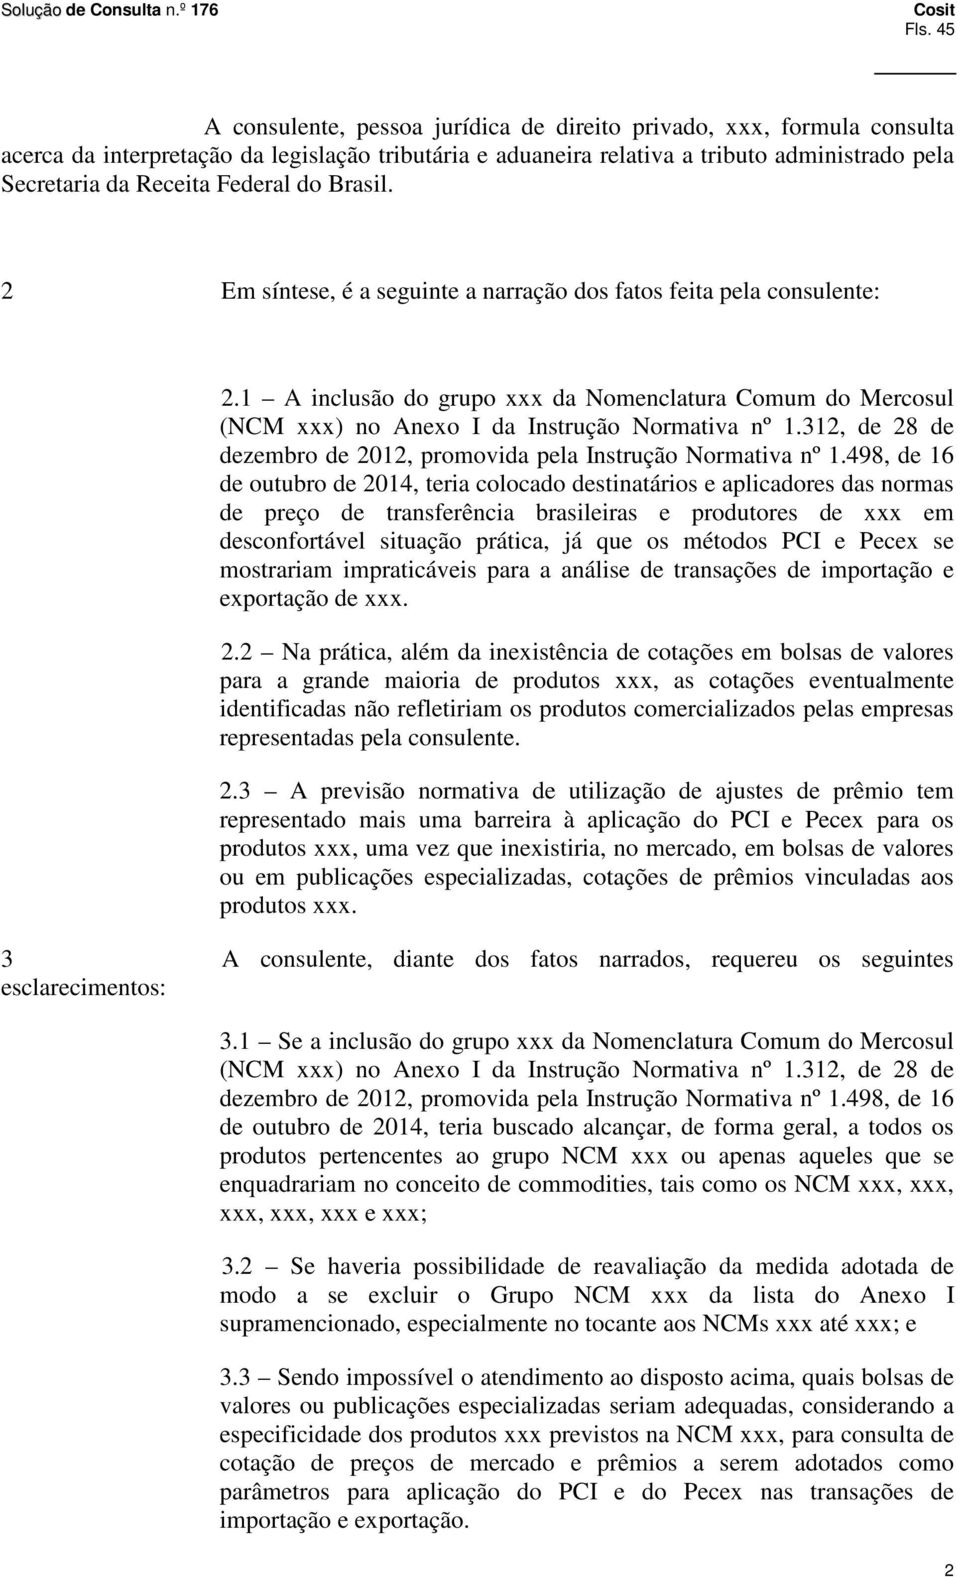 1 A inclusão do grupo xxx da Nomenclatura Comum do Mercosul (NCM xxx) no Anexo I da Instrução Normativa nº 1.312, de 28 de dezembro de 2012, promovida pela Instrução Normativa nº 1.